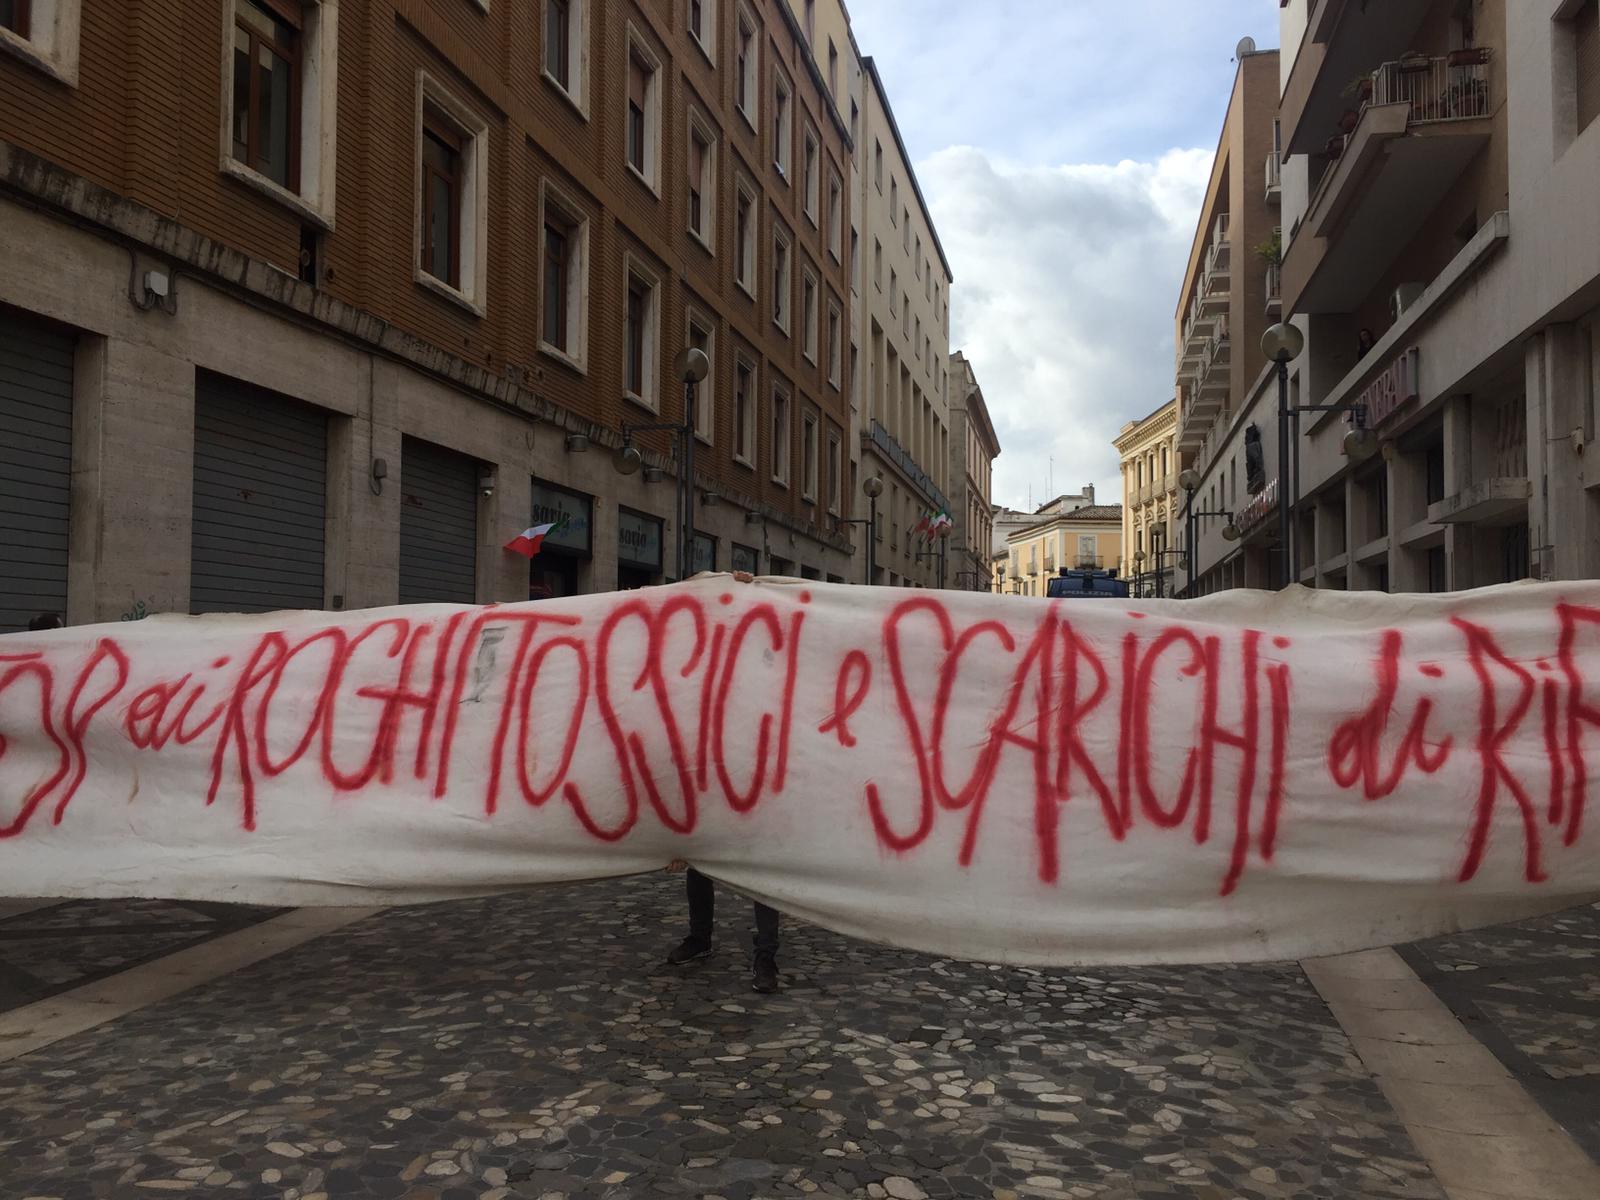 Benevento| La protesta della “Terra dei fuochi”arriva a Benevento nel giorno di Mattarella